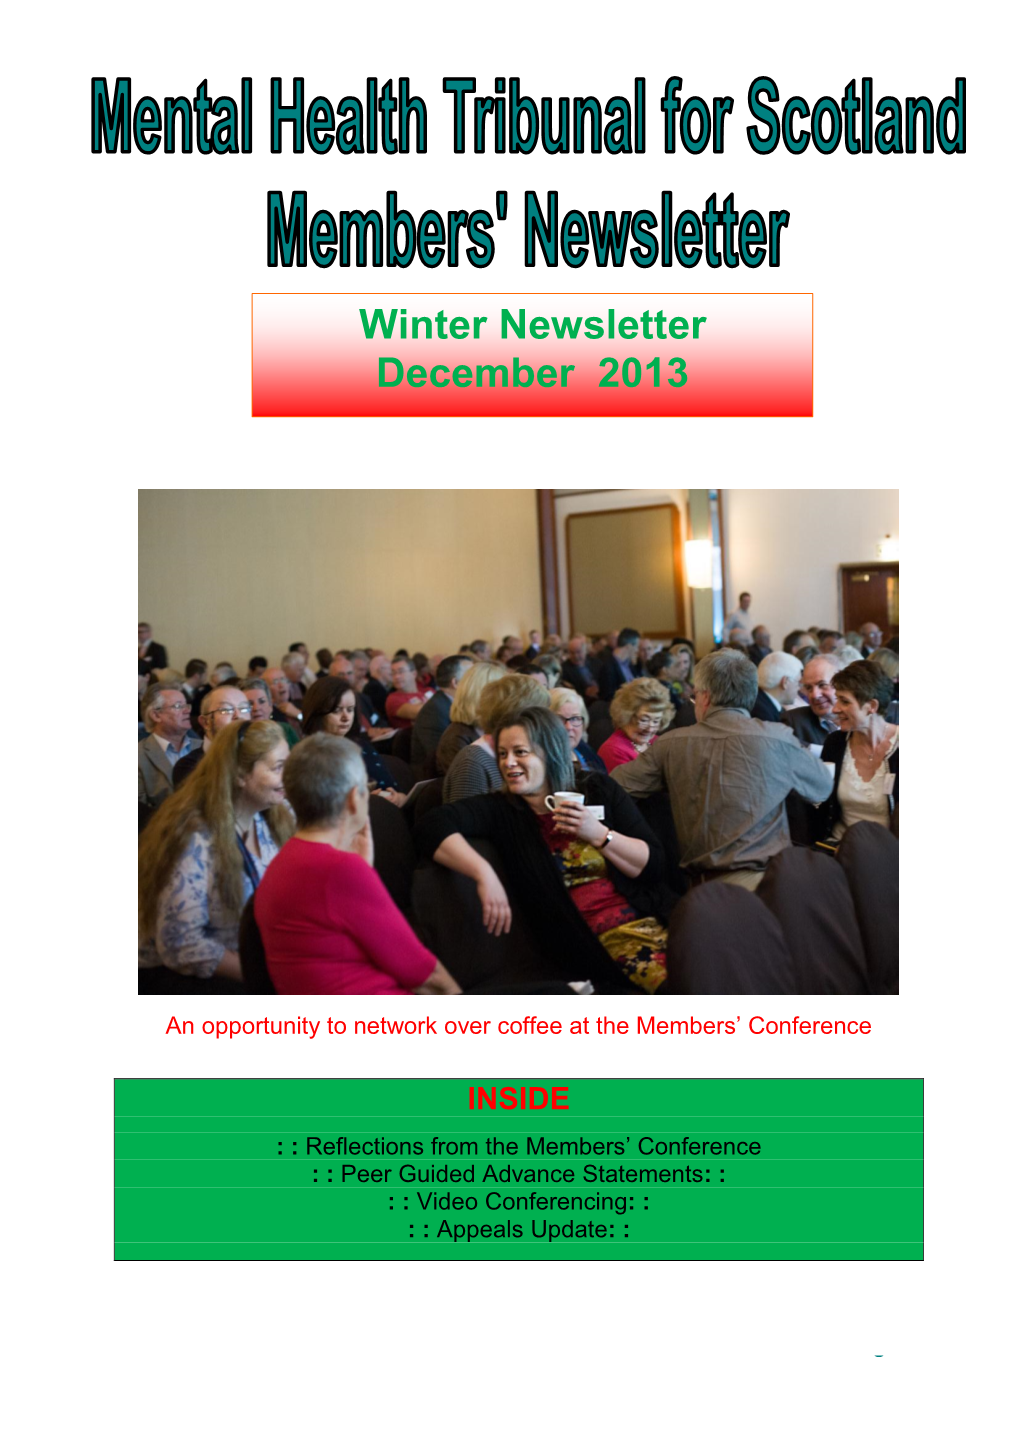 Winter Newsletter December 2013